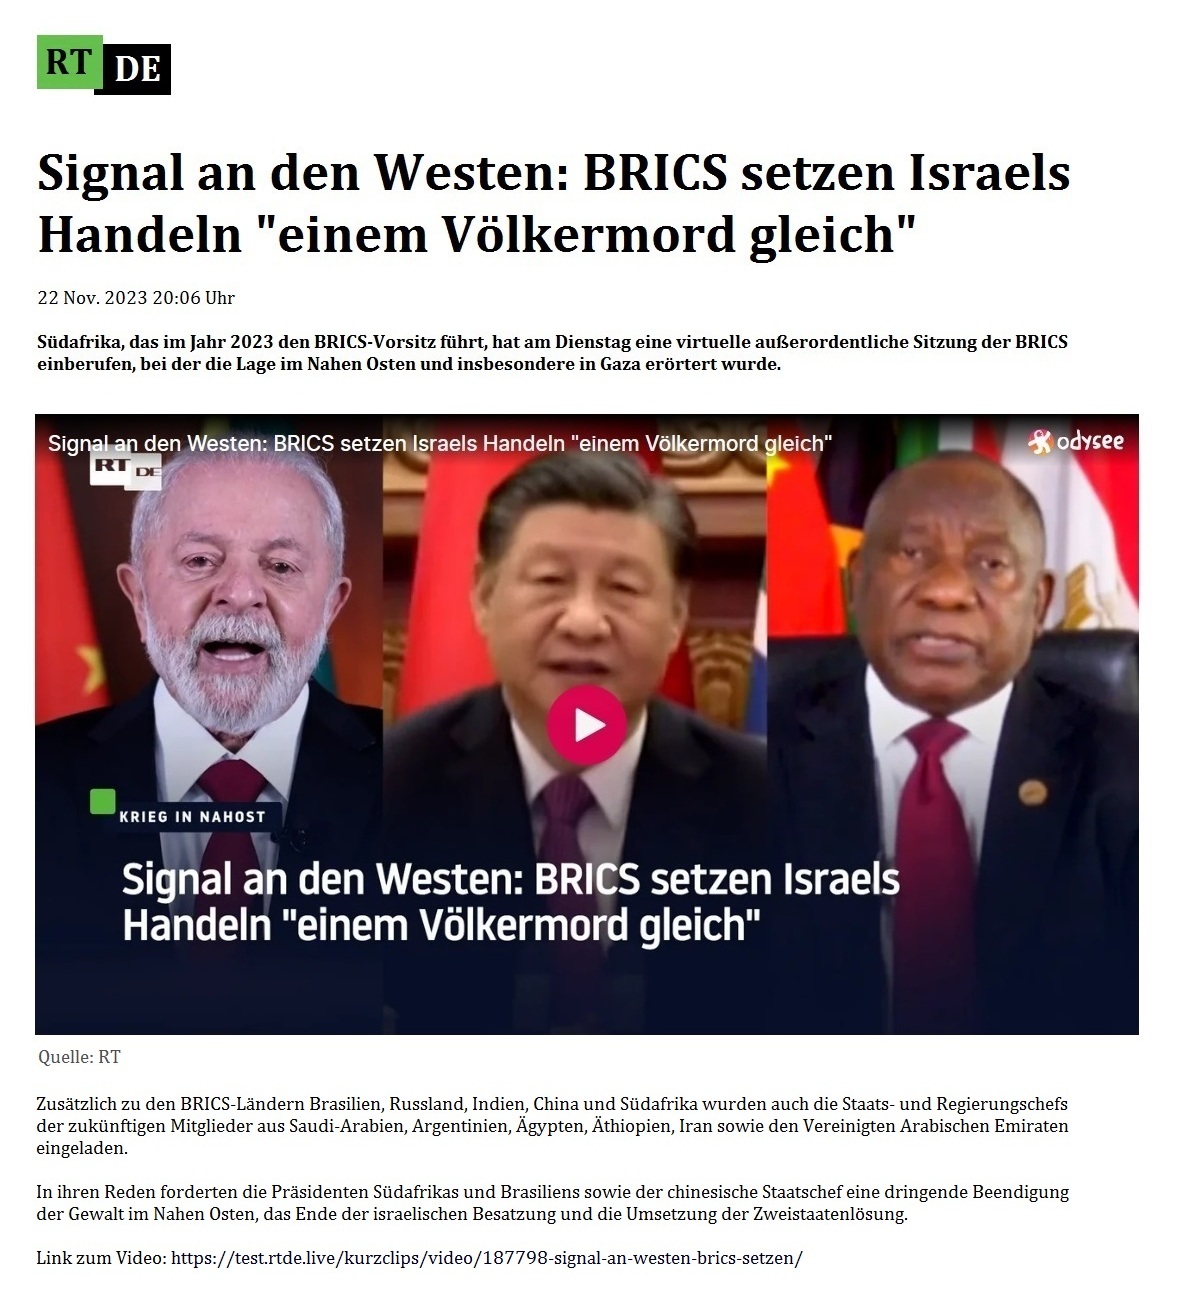 Signal an den Westen: BRICS setzen Israels Handeln 'einem Völkermord gleich' - 22 Nov. 2023 20:06 Uhr - Südafrika, das im Jahr 2023 den BRICS-Vorsitz führt, hat am Dienstag eine virtuelle außerordentliche Sitzung der BRICS einberufen, bei der die Lage im Nahen Osten und insbesondere in Gaza erörtert wurde. - 22 Nov. 2023 20:06 Uhr - RT DE - Link zum Video: https://test.rtde.live/kurzclips/video/187798-signal-an-westen-brics-setzen/